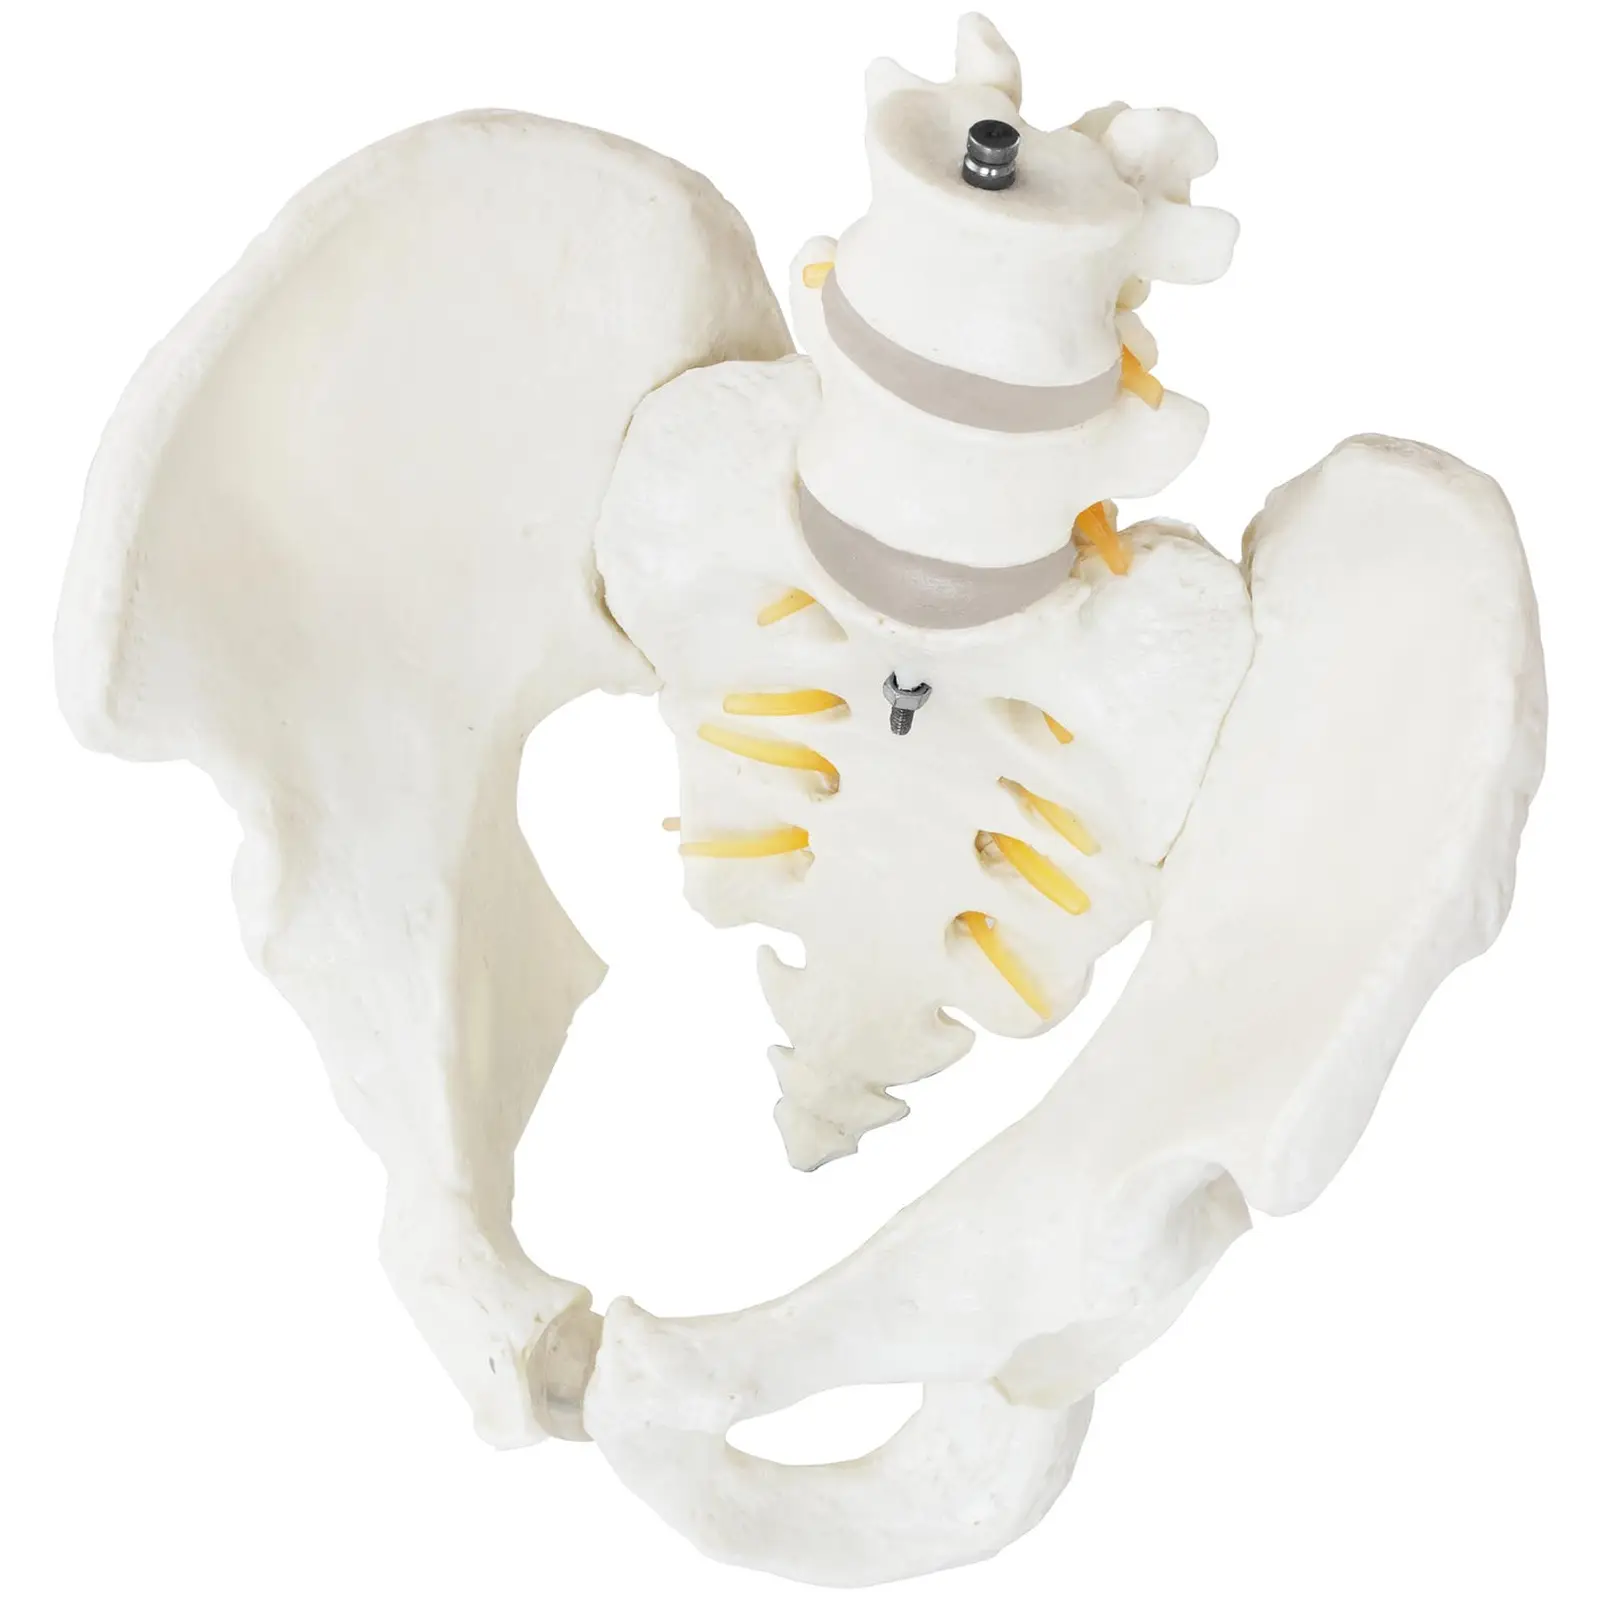 Miednica z kręgami lędźwiowymi - model anatomiczny